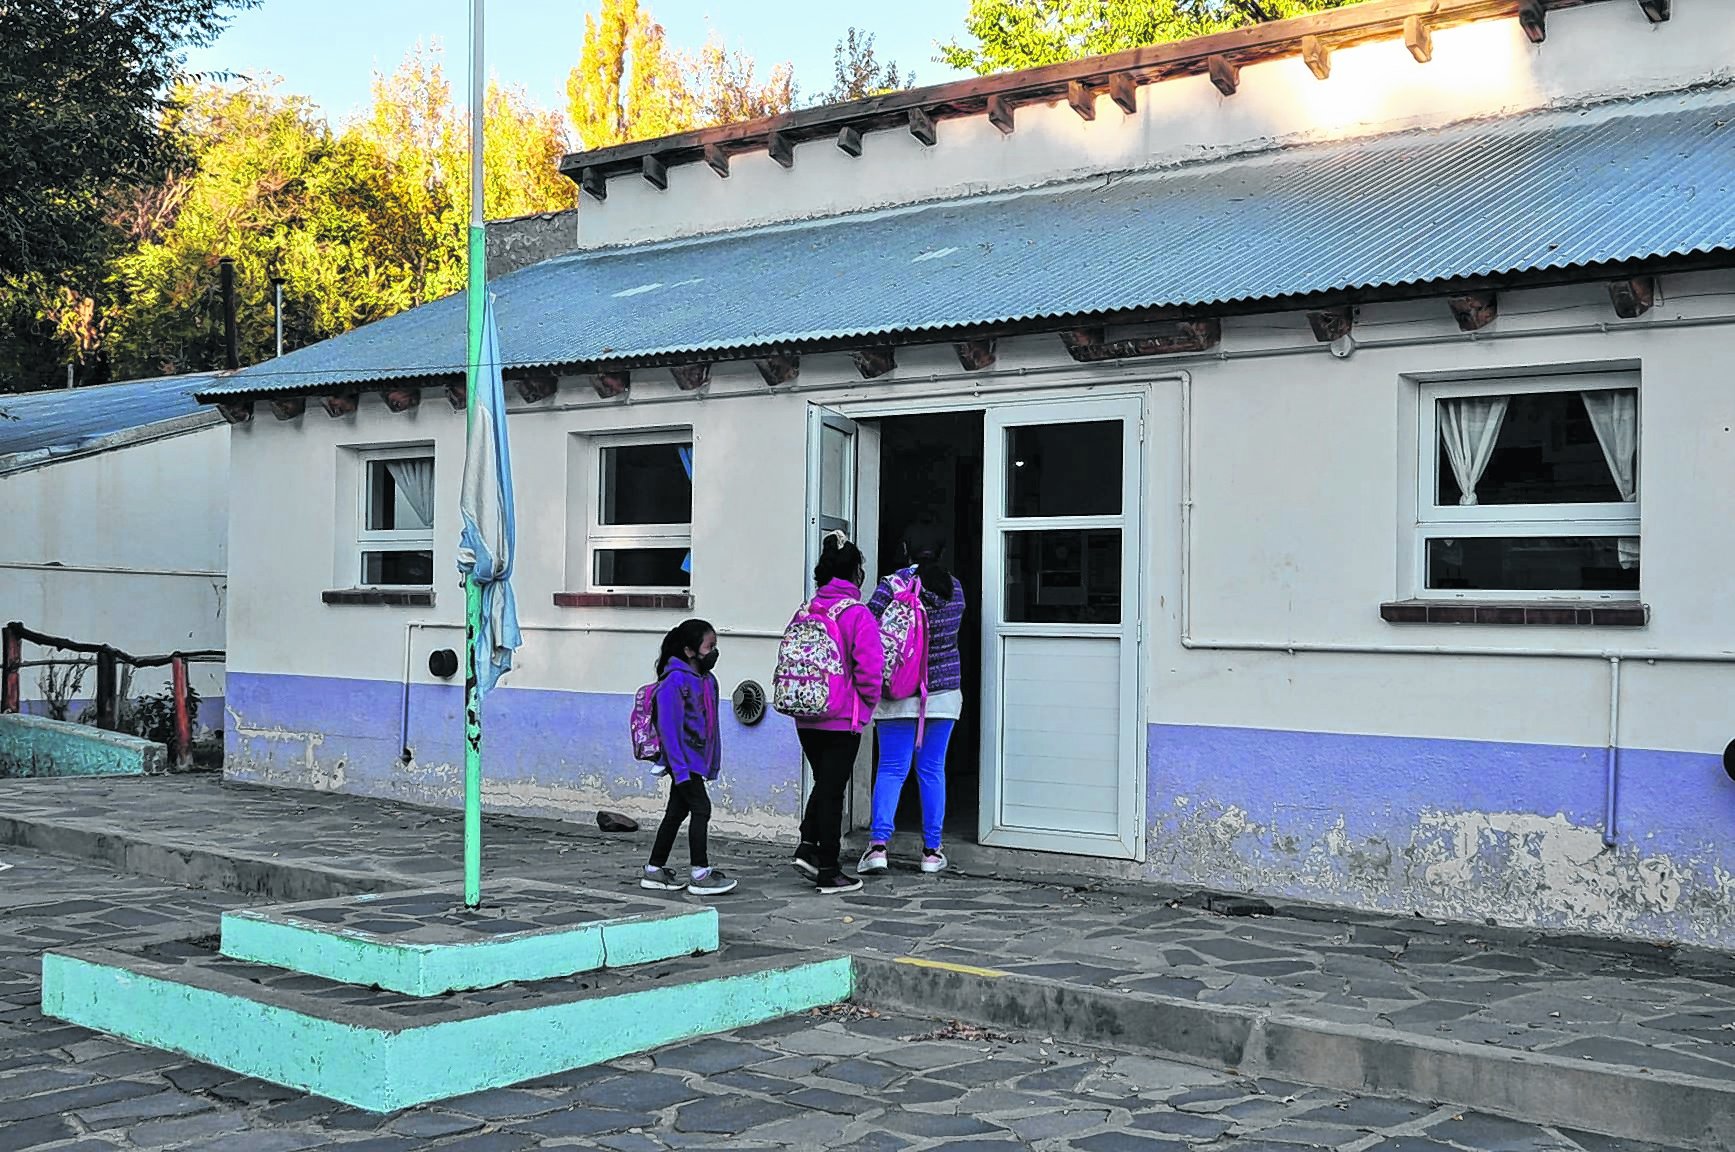 Las chicas y chicos que viven cerca de la escuela pueden concurrir sin problemas. Foto: José Mellado.